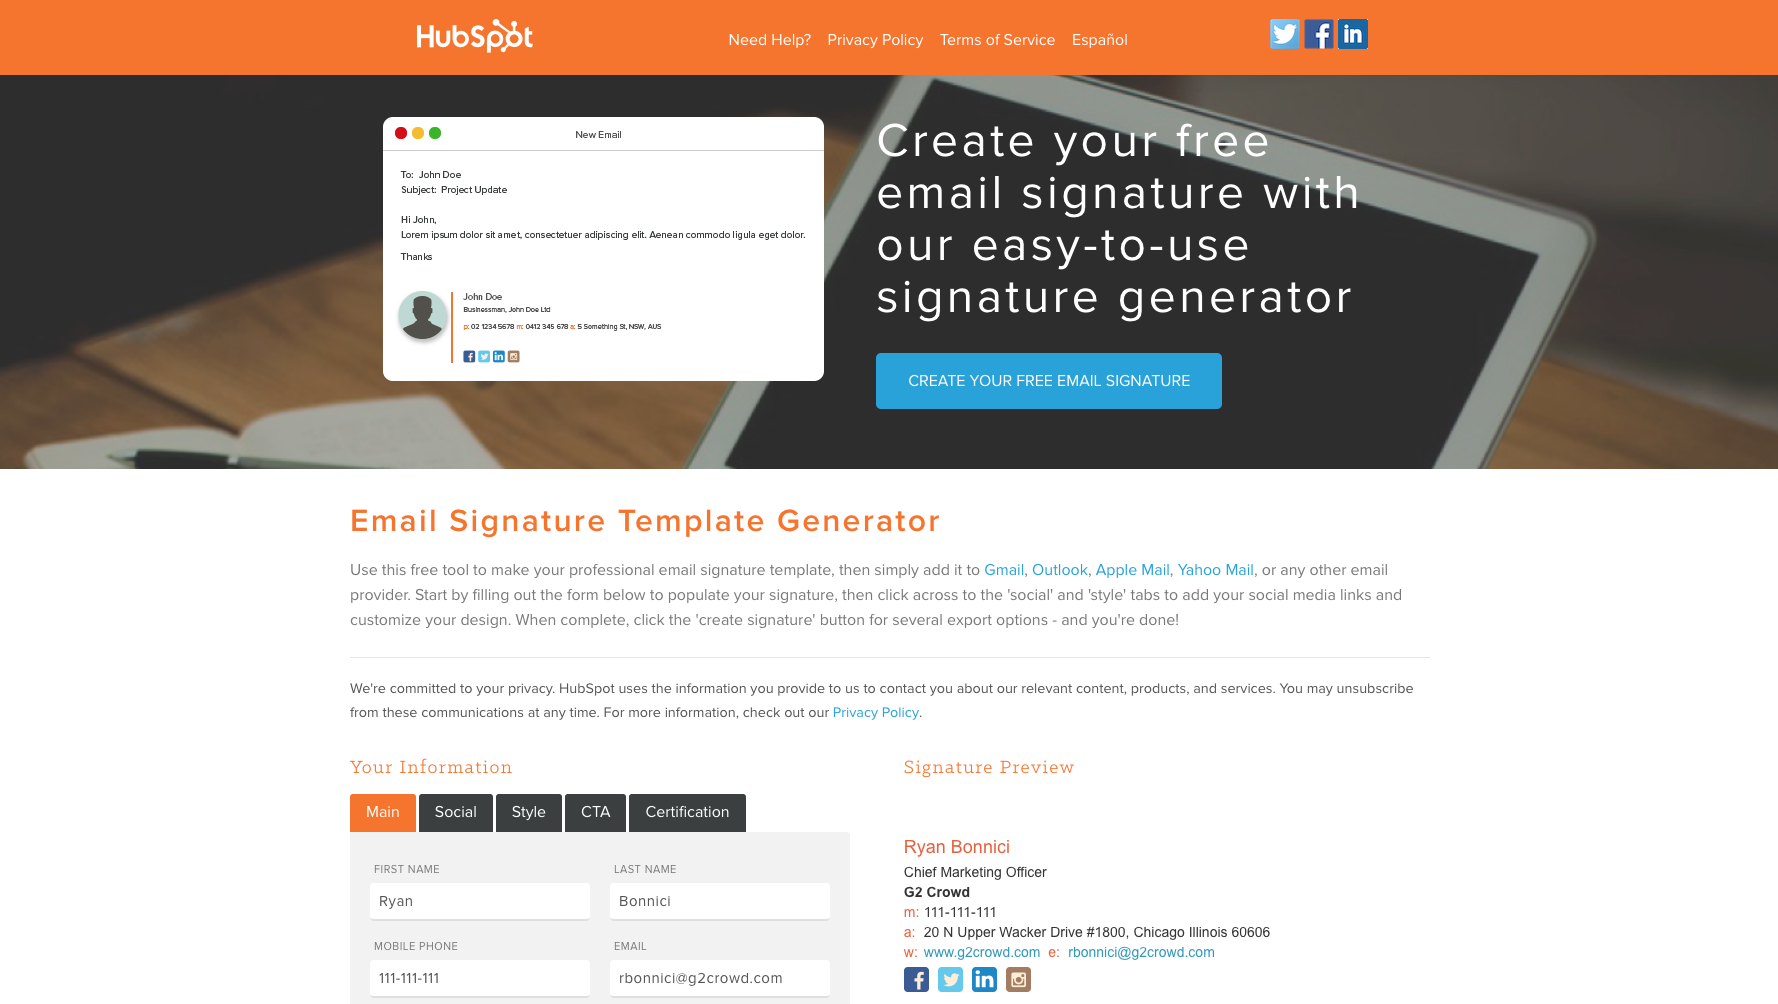 HubSpot's Email Signature Generator